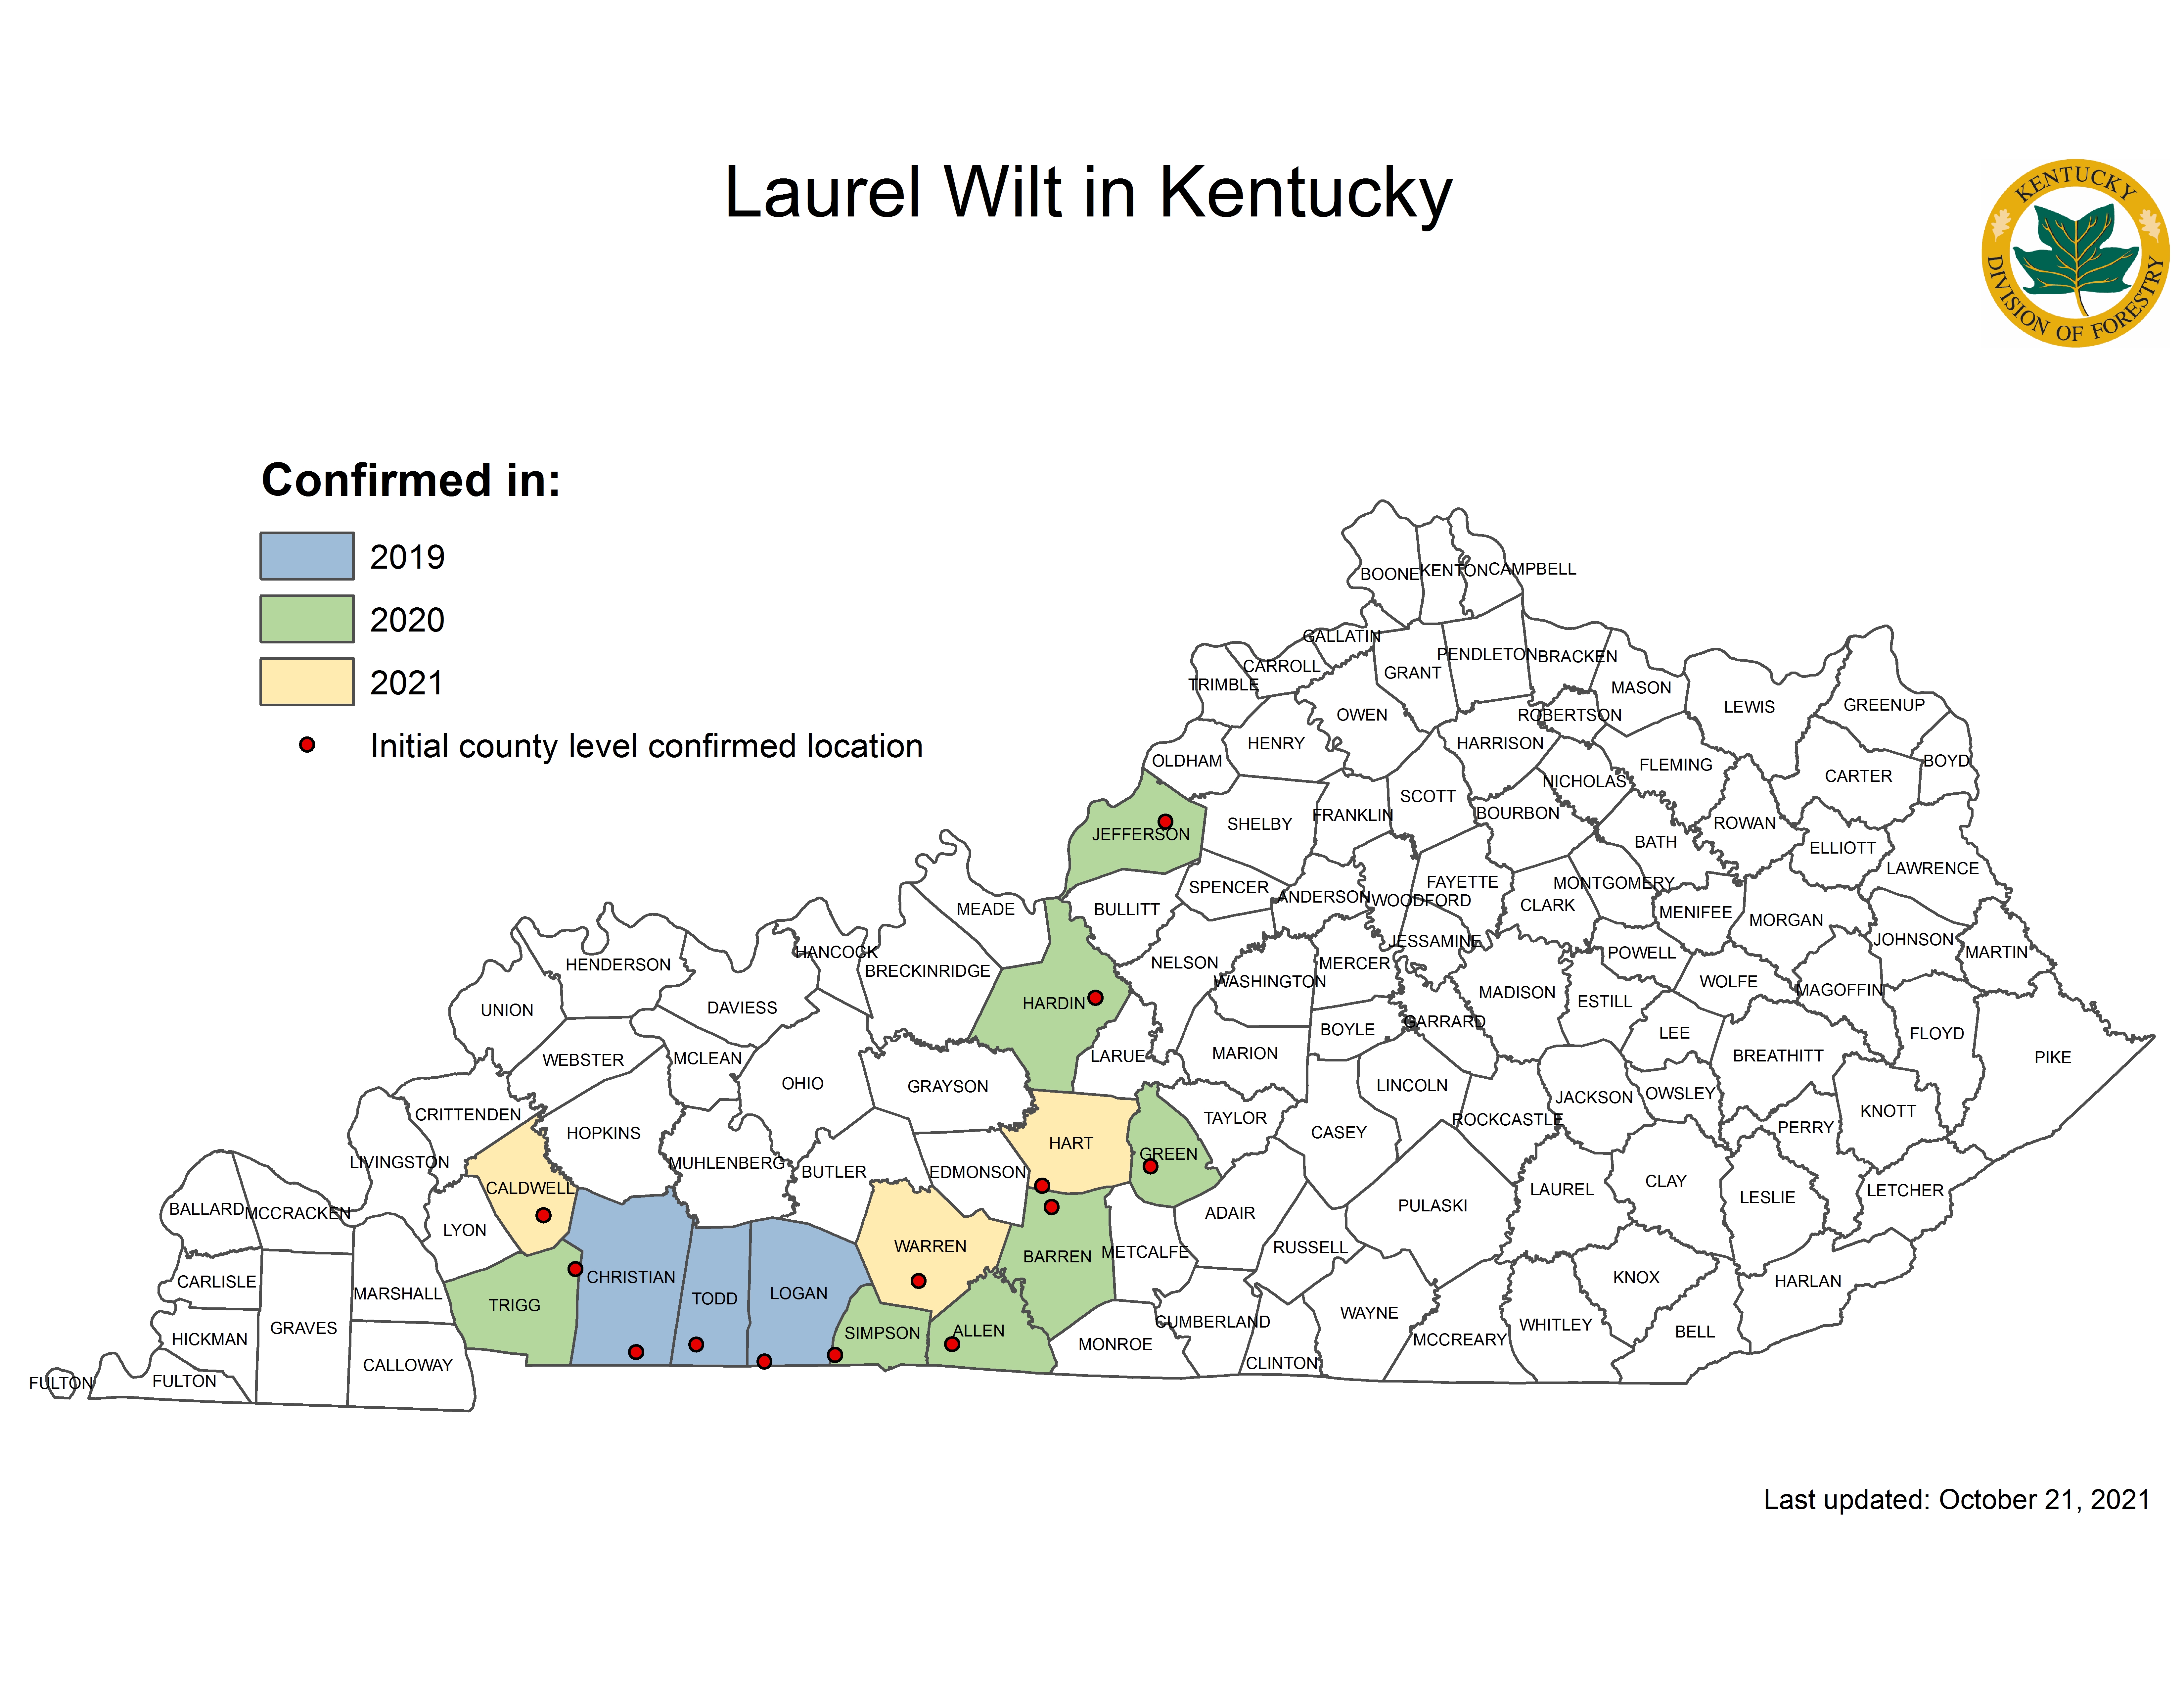 Laurel Wilt Disease Map